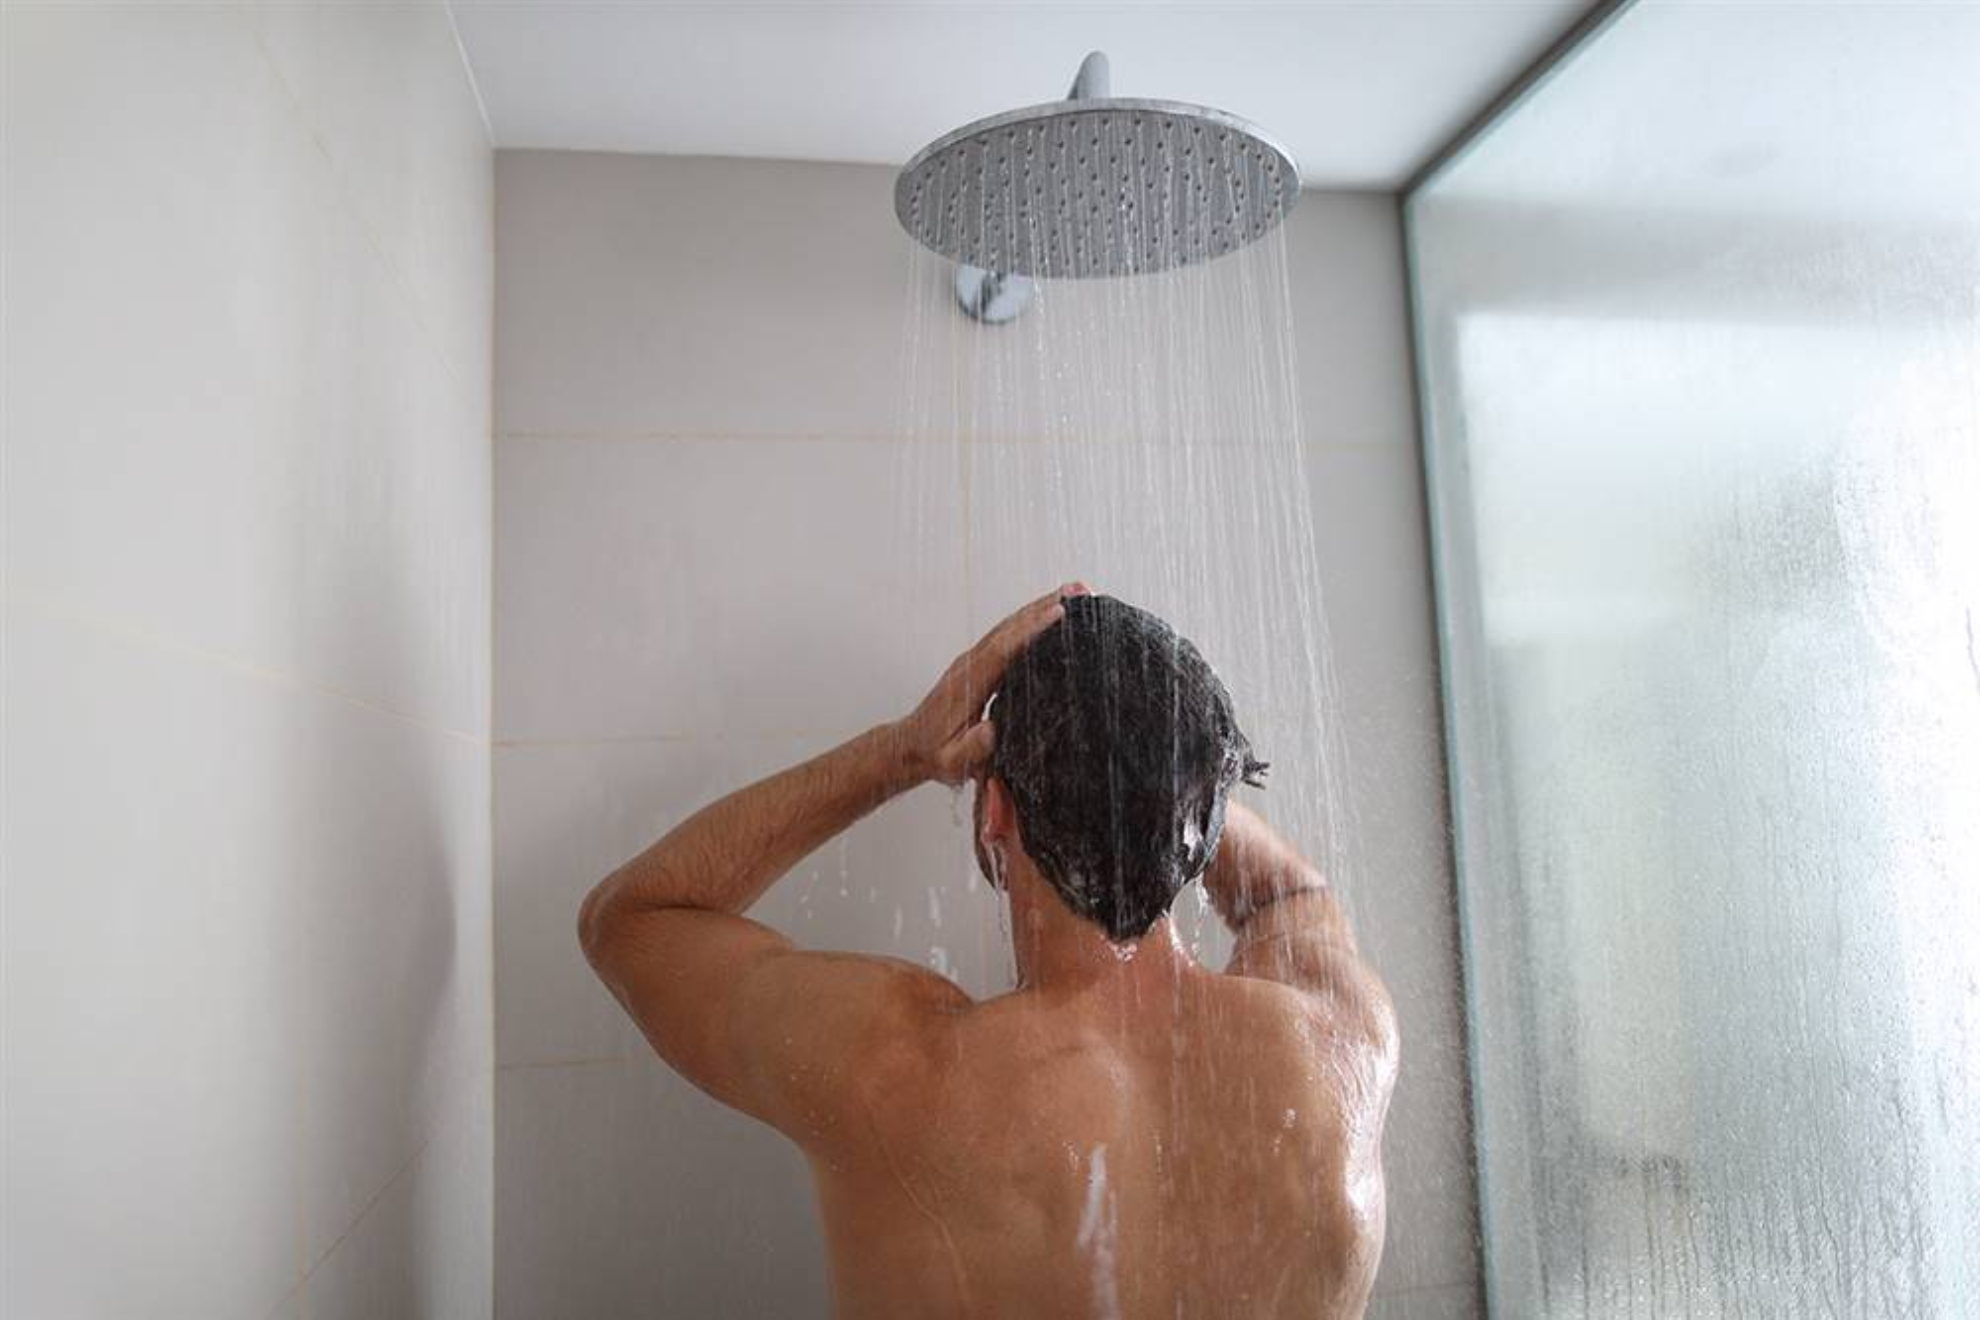 Qu es mejor ducharse con agua fra o con agua caliente?